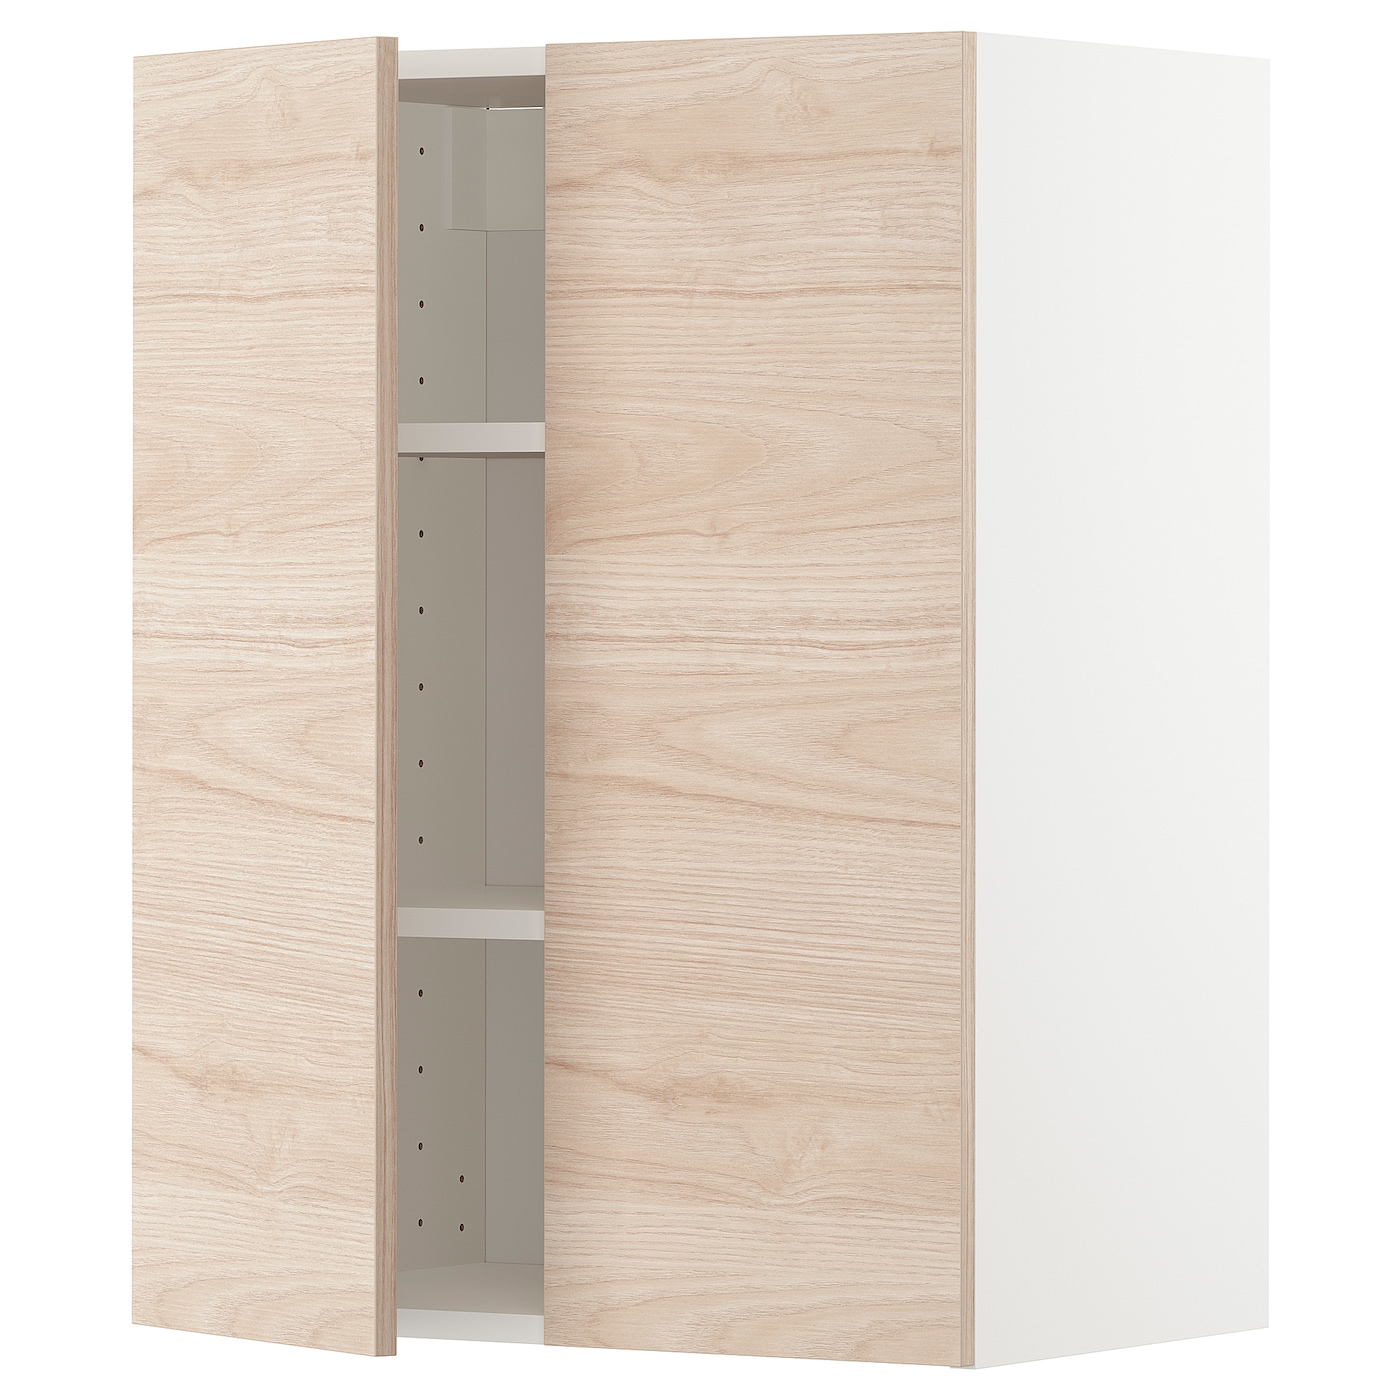 Навесной шкаф с полкой - METOD IKEA/ МЕТОД ИКЕА, 80х60 см,  под беленый дуб /белый